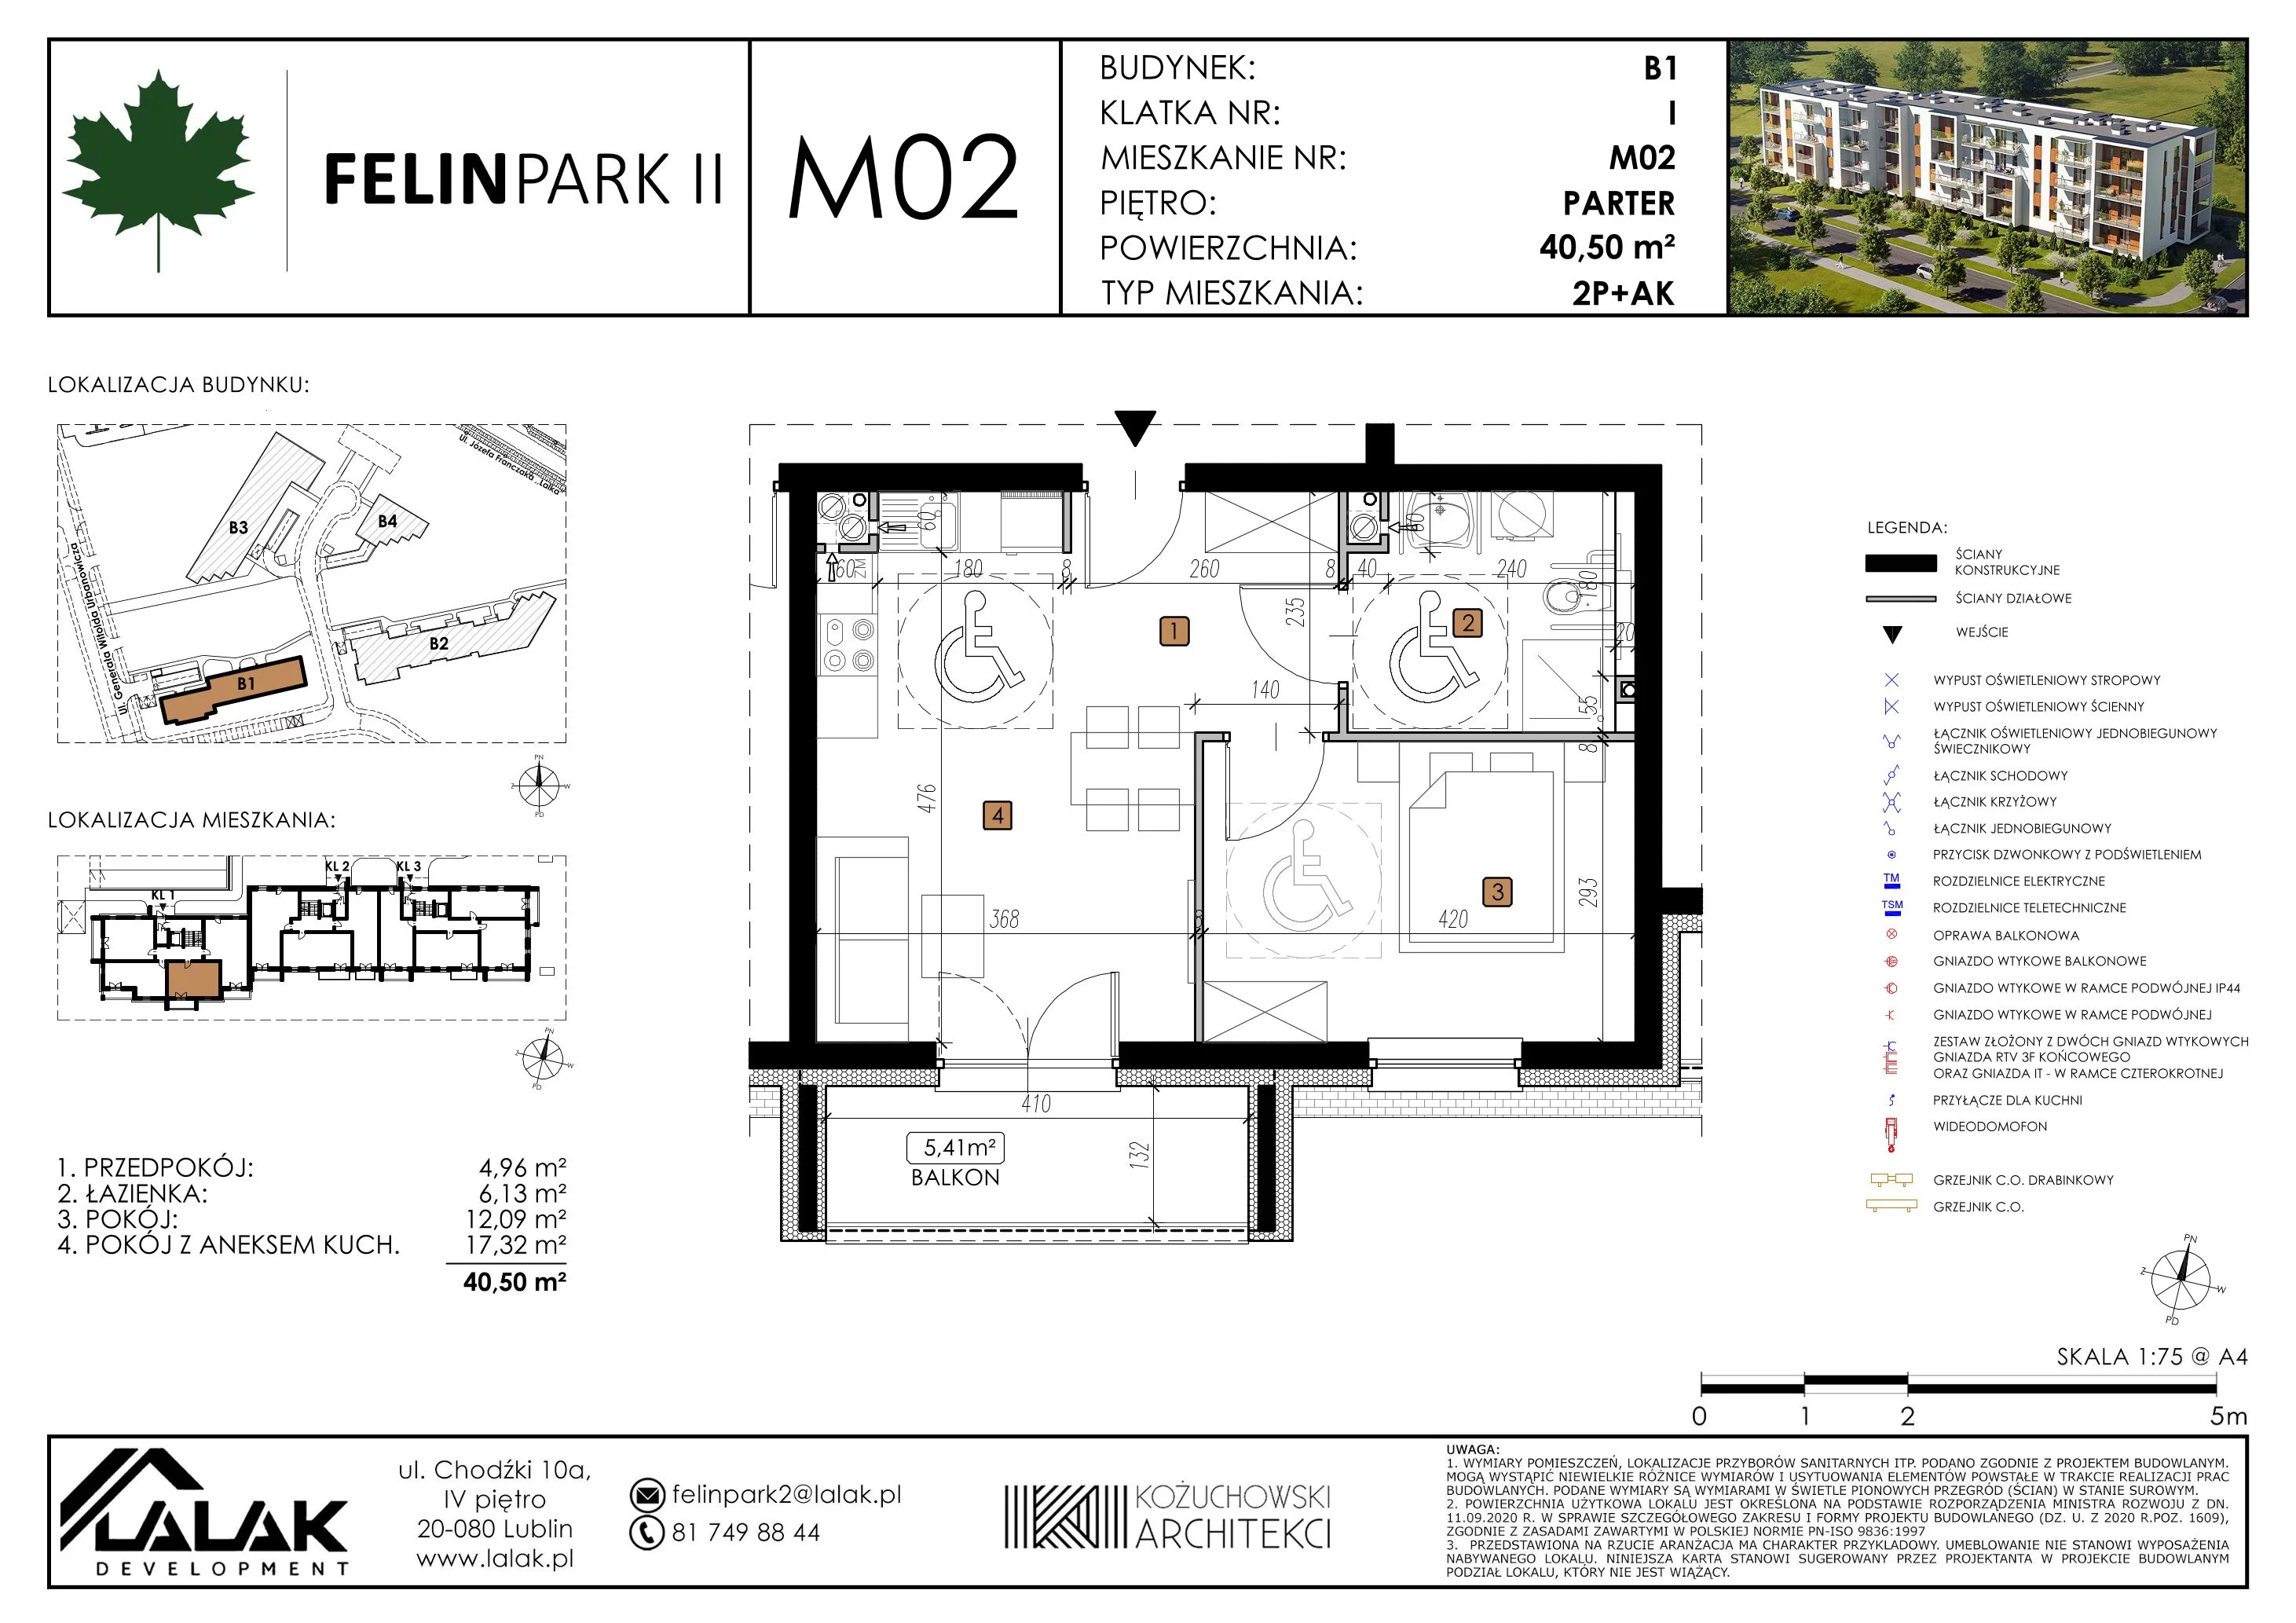 Mieszkanie 40,52 m², parter, oferta nr B1_M2/P, Felin Park II, Lublin, Felin, ul. gen. Stanisława Skalskiego 8-10